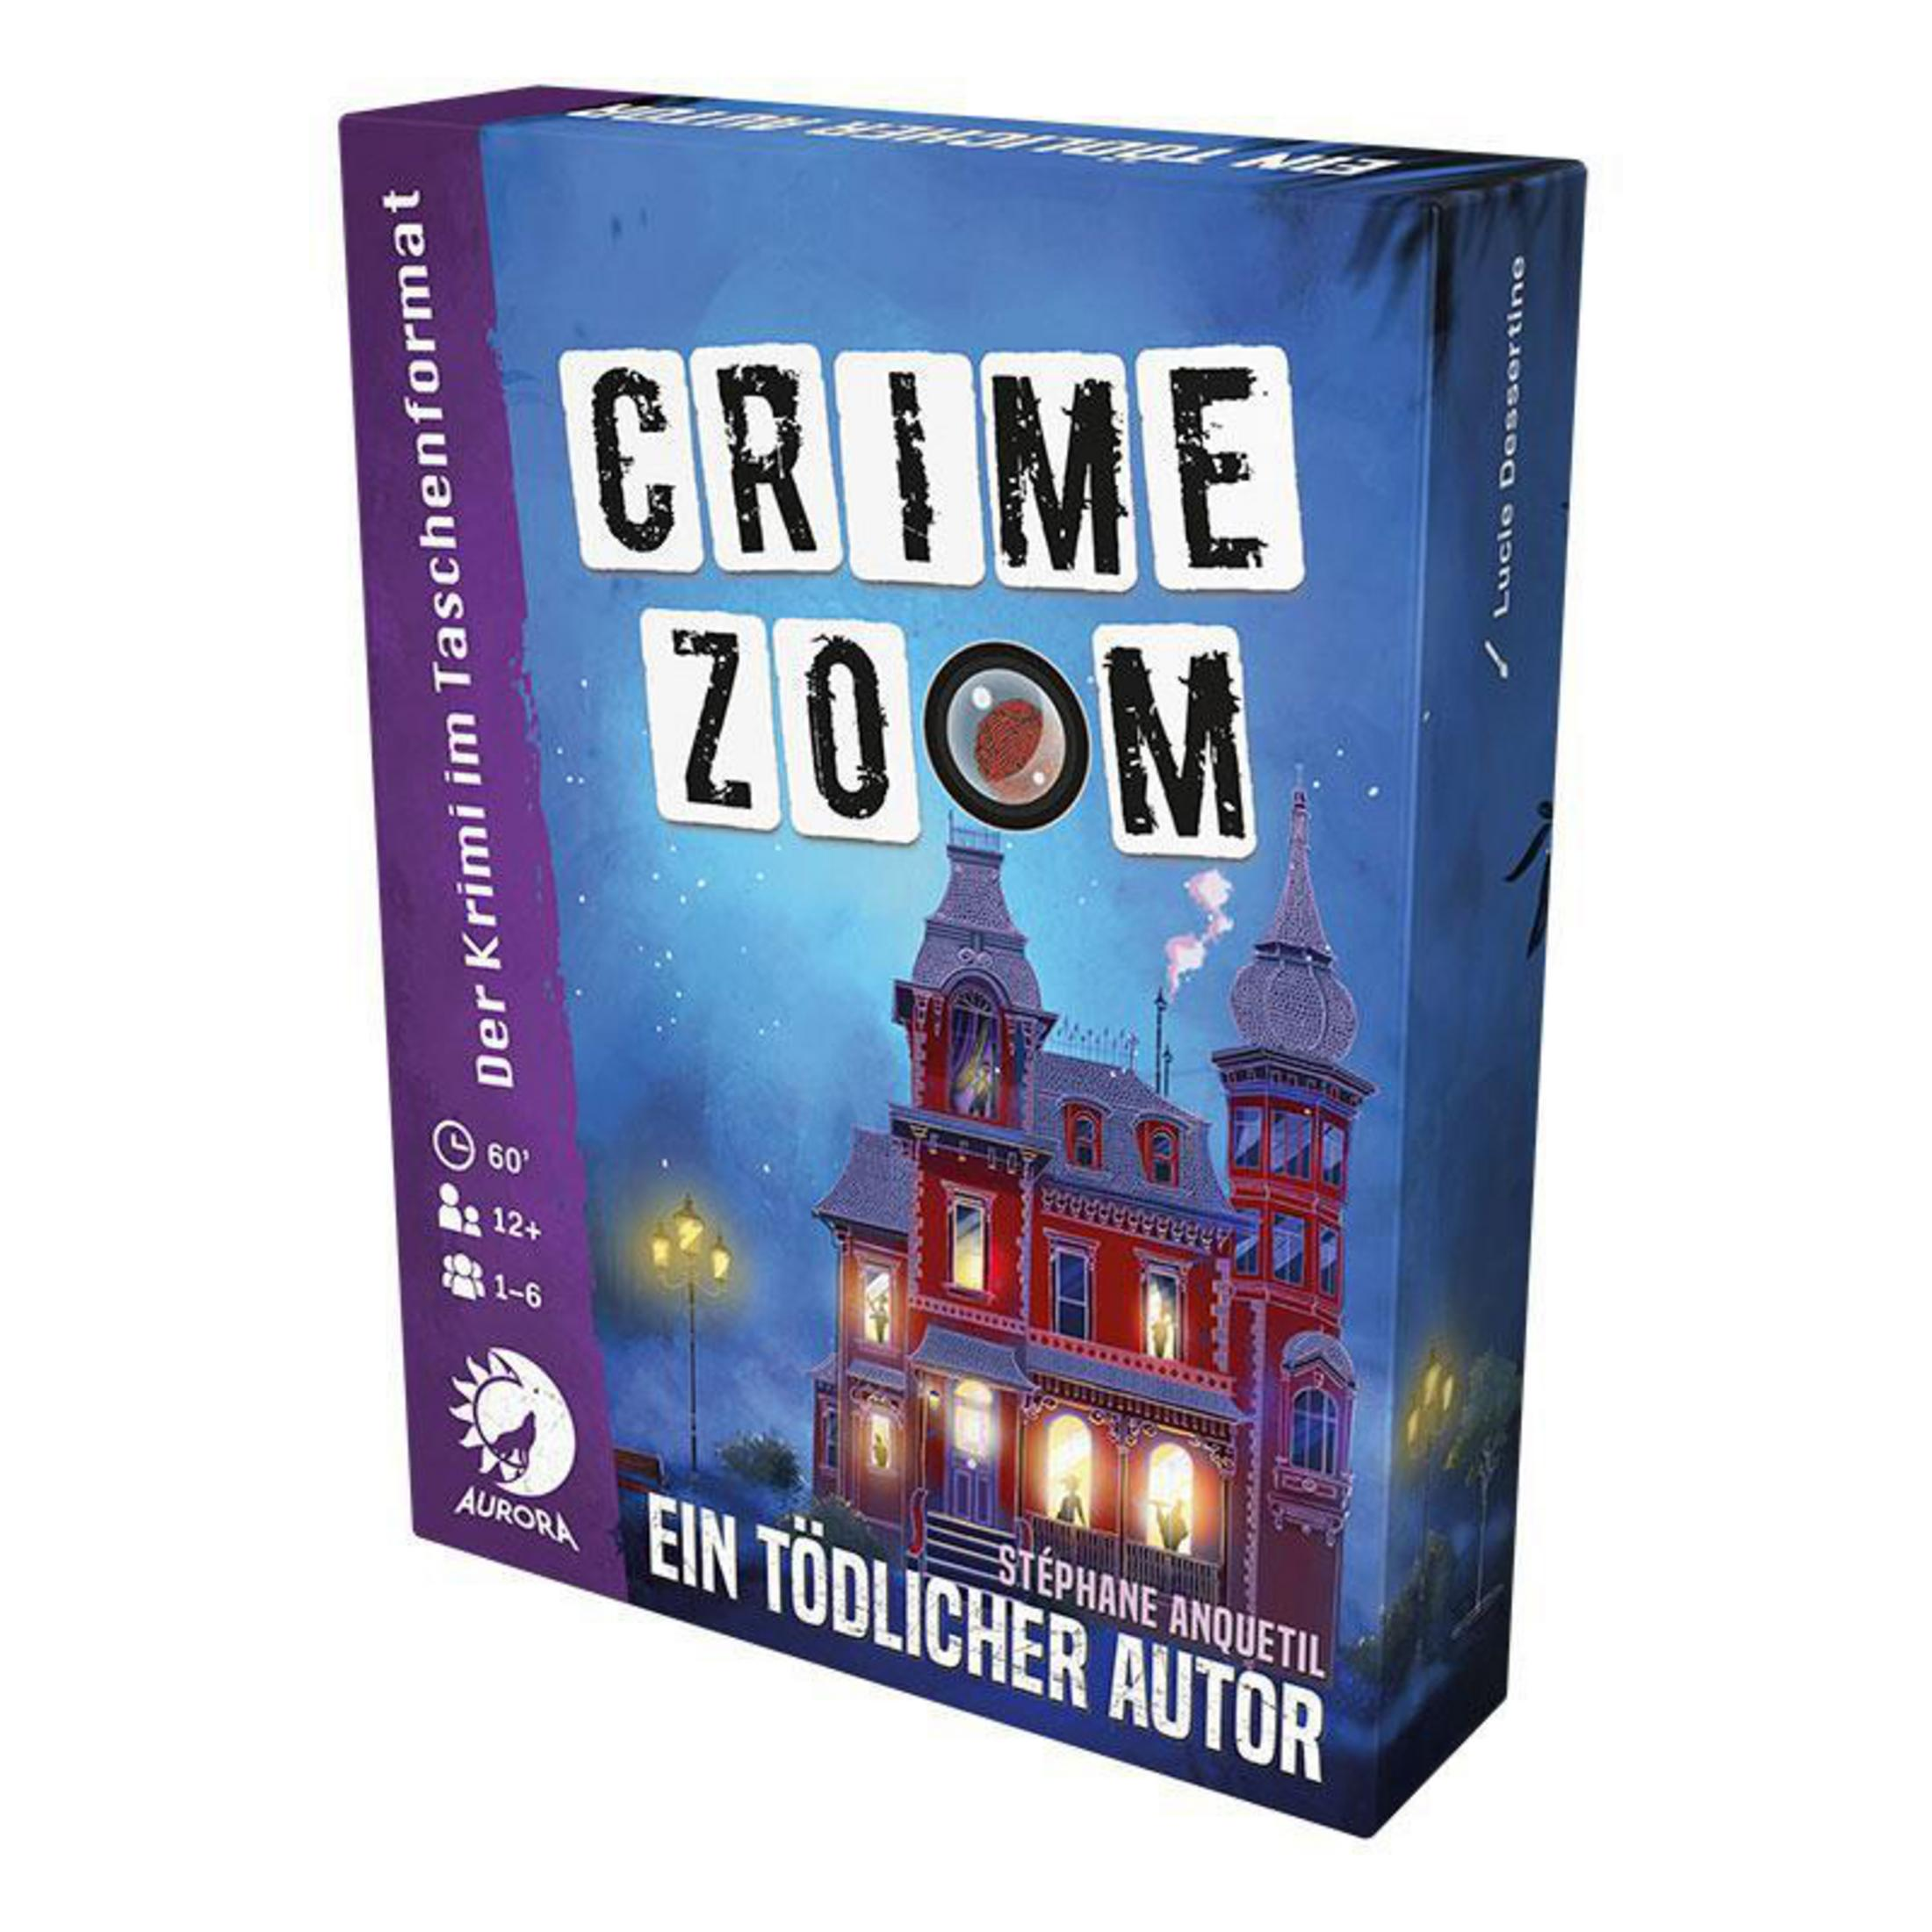 CRIME 3-EIN AURORA FALL TÖDLICHER AUTOR ZOOM LDGD0006 Gesellschaftsspiel